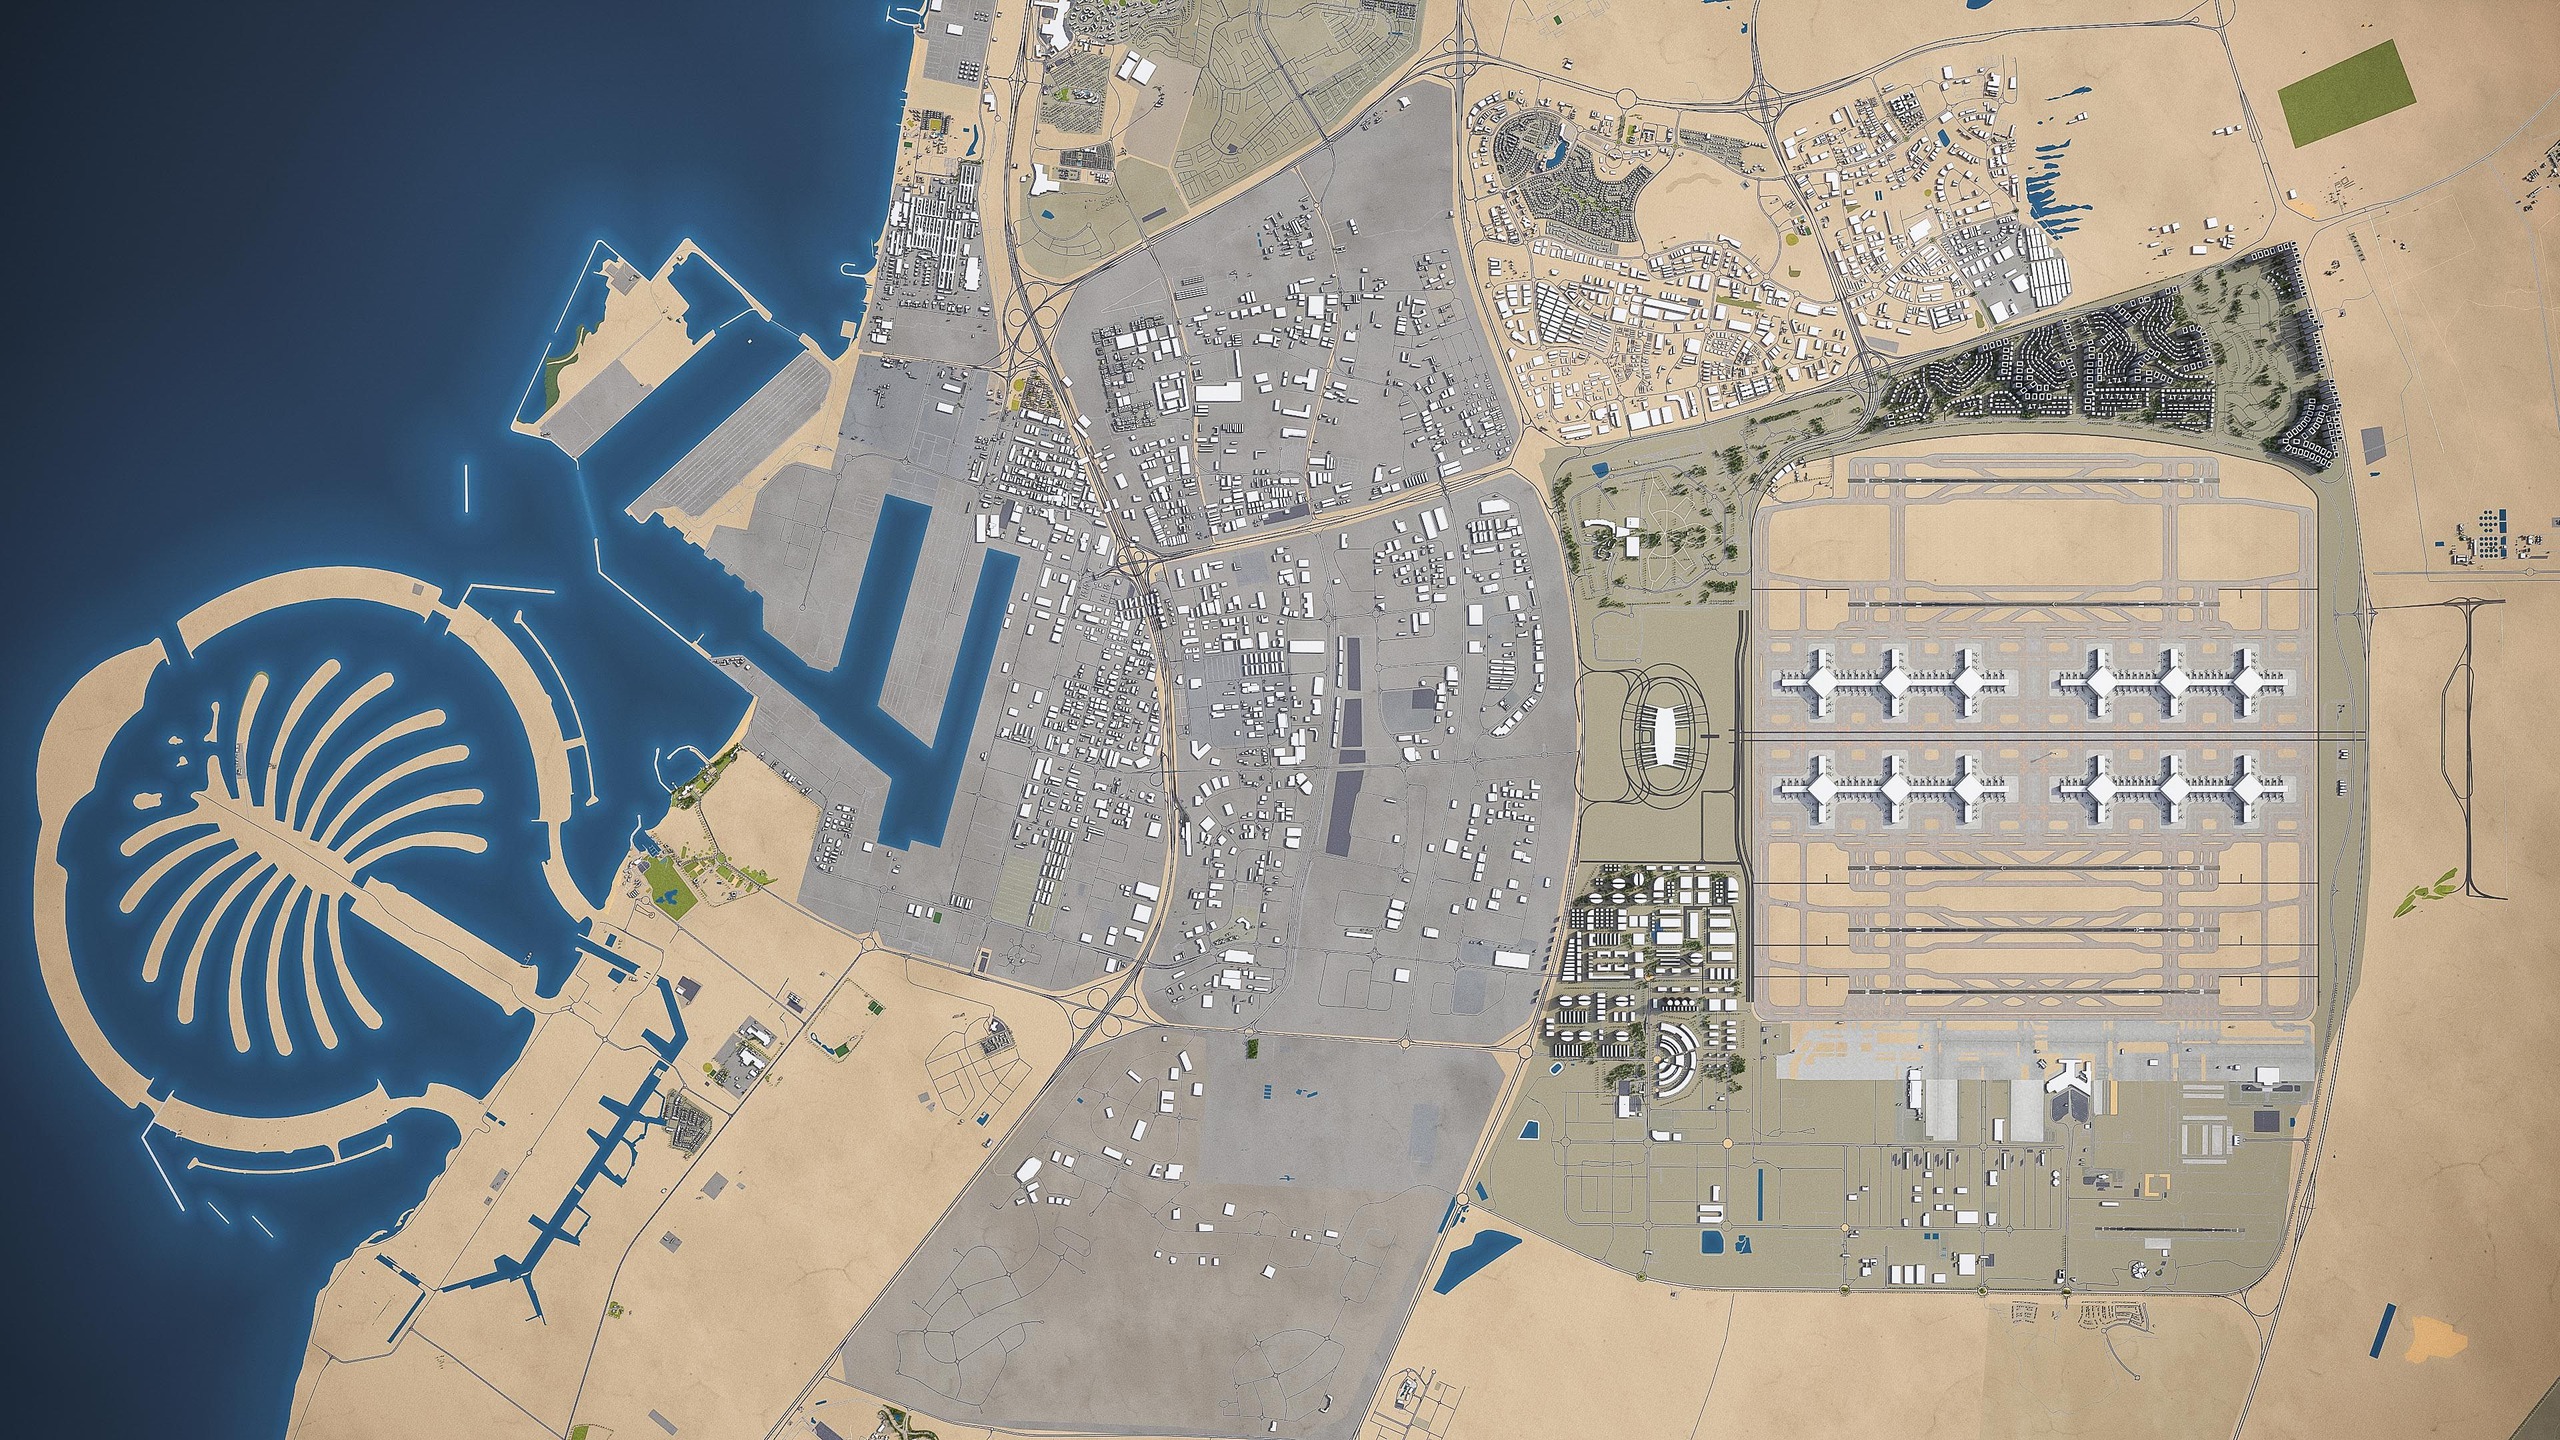 Thành phố sân bay Trung tâm Thế giới Dubai được quy hoạch rộng tới 140km2, kỳ vọng là nơi ở của hơn 1 triệu người, quy tụ những công ty hàng đầu thế giới trong lĩnh vực hậu cầu (logistics) và vận tải hàng không.